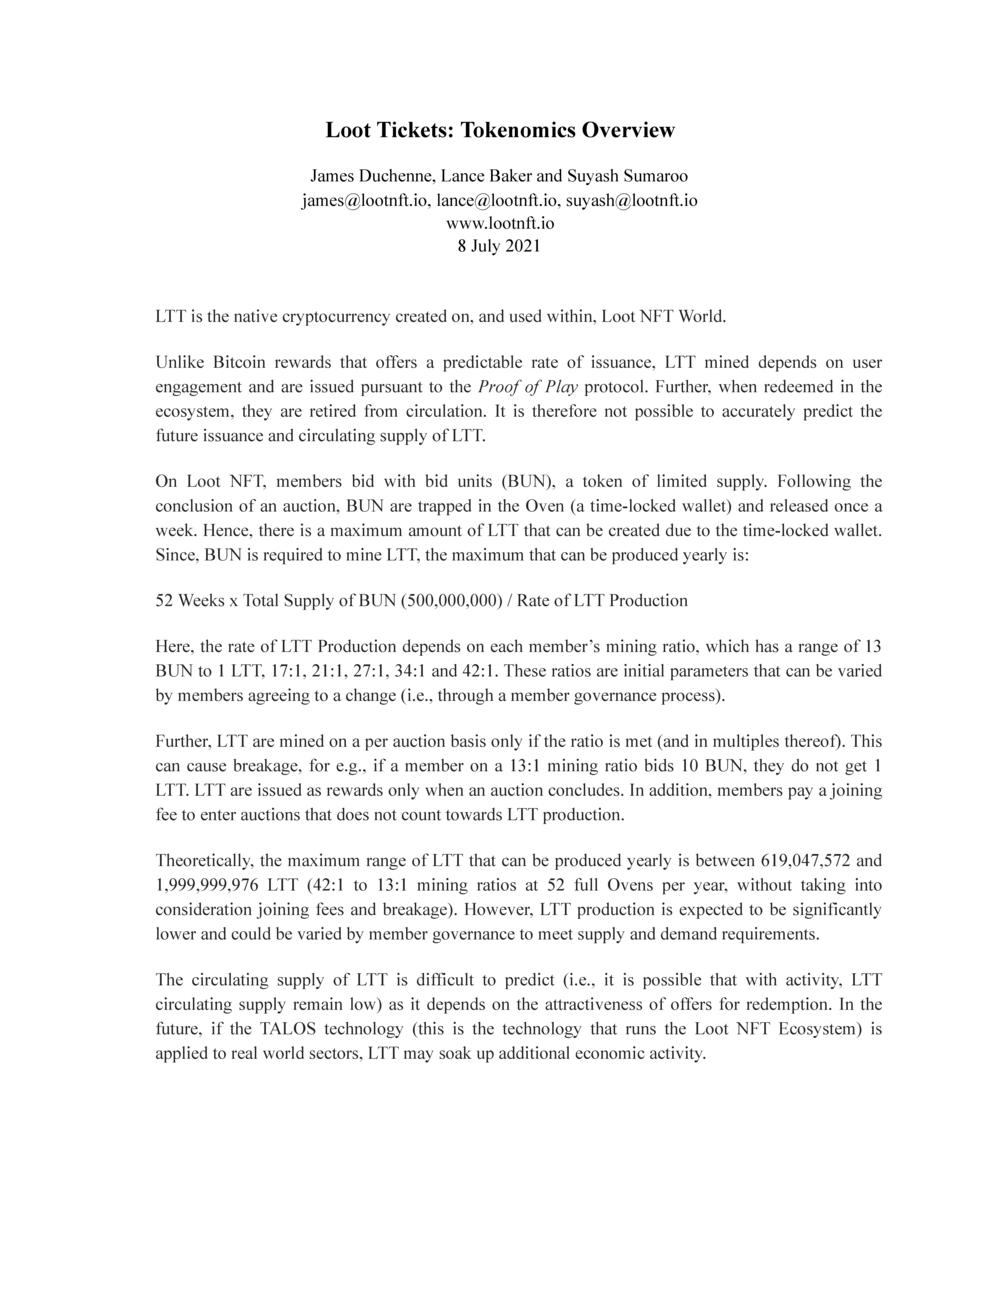 LTT Tokonemics Overview